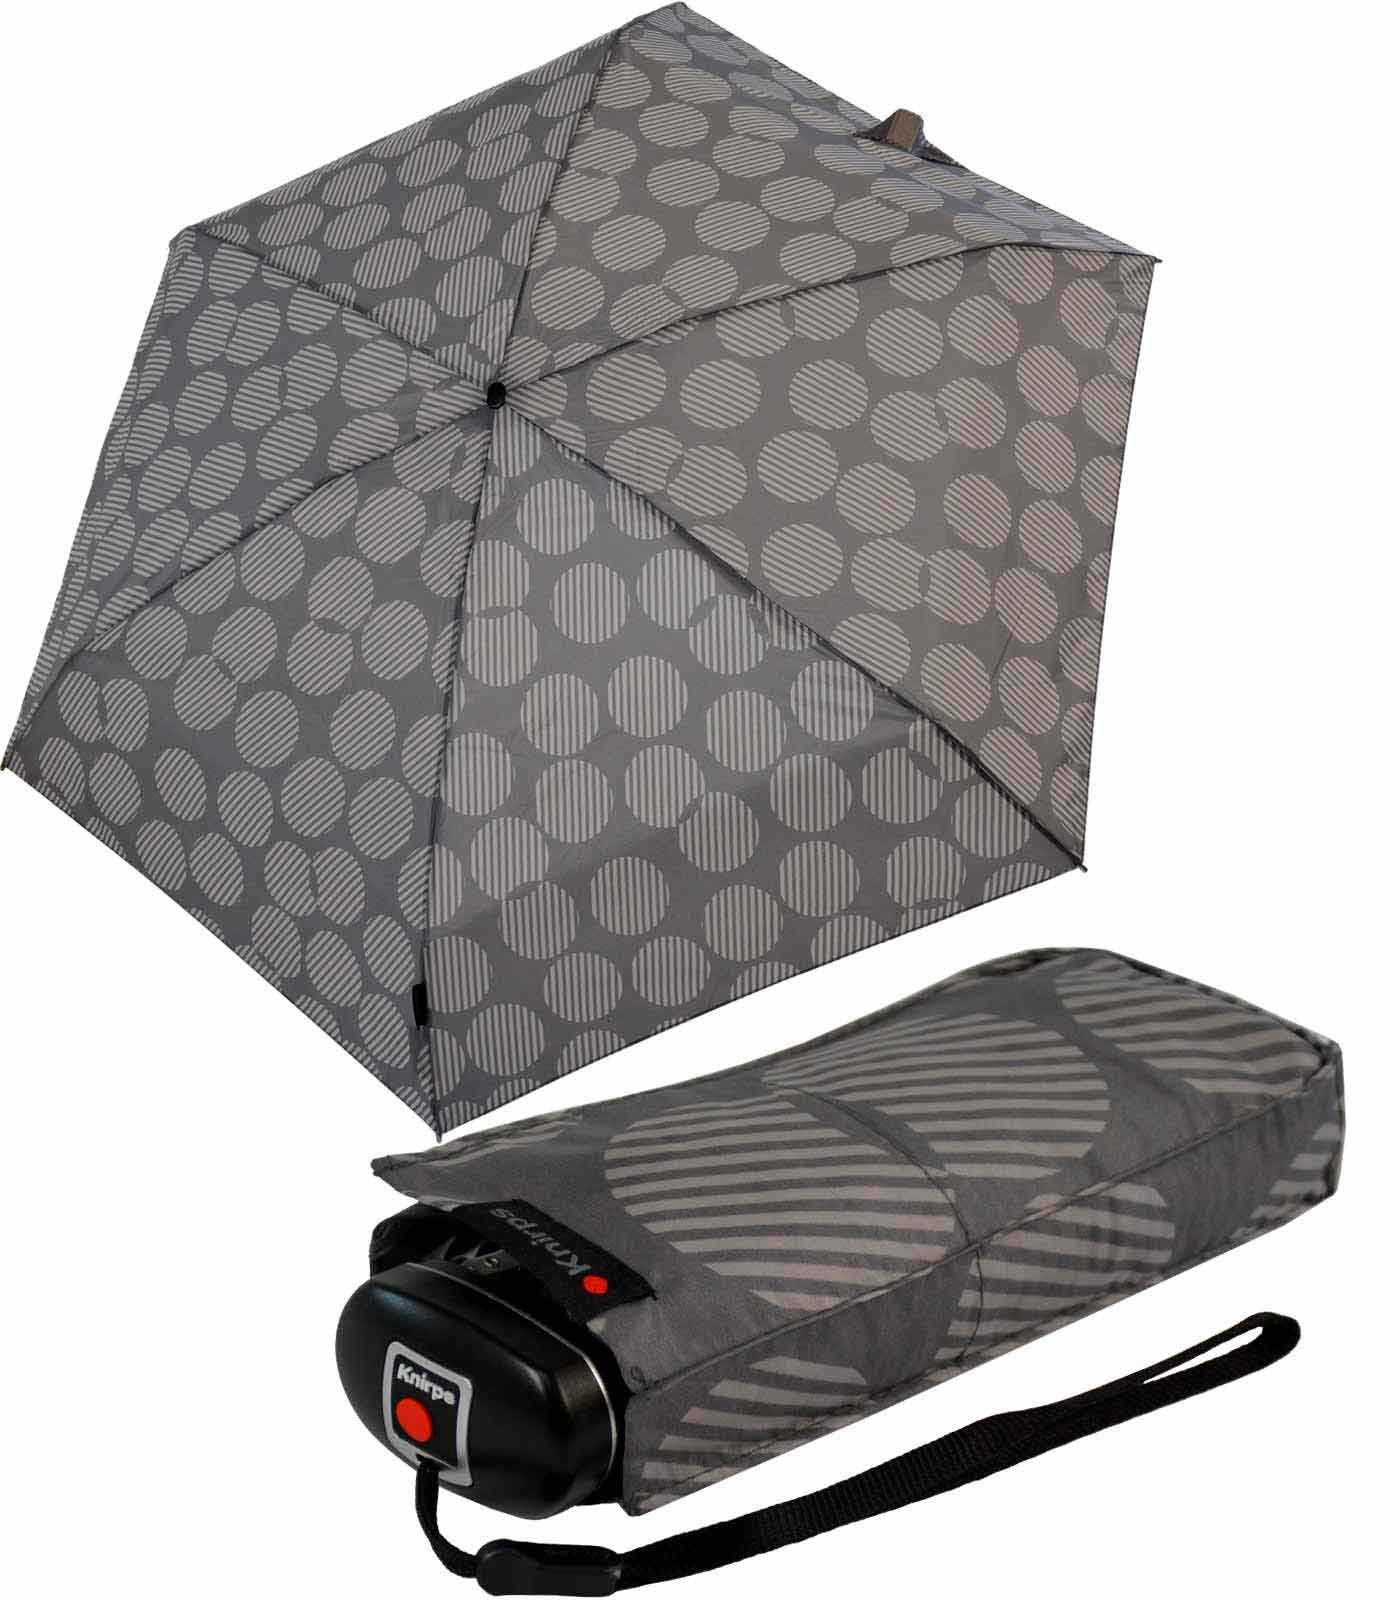 UV-Schutz, Travel klein passt zuverlässige jede der Mini-Schirm Tasche in der Begleiter, leicht kompakt Knirps® Taschenregenschirm